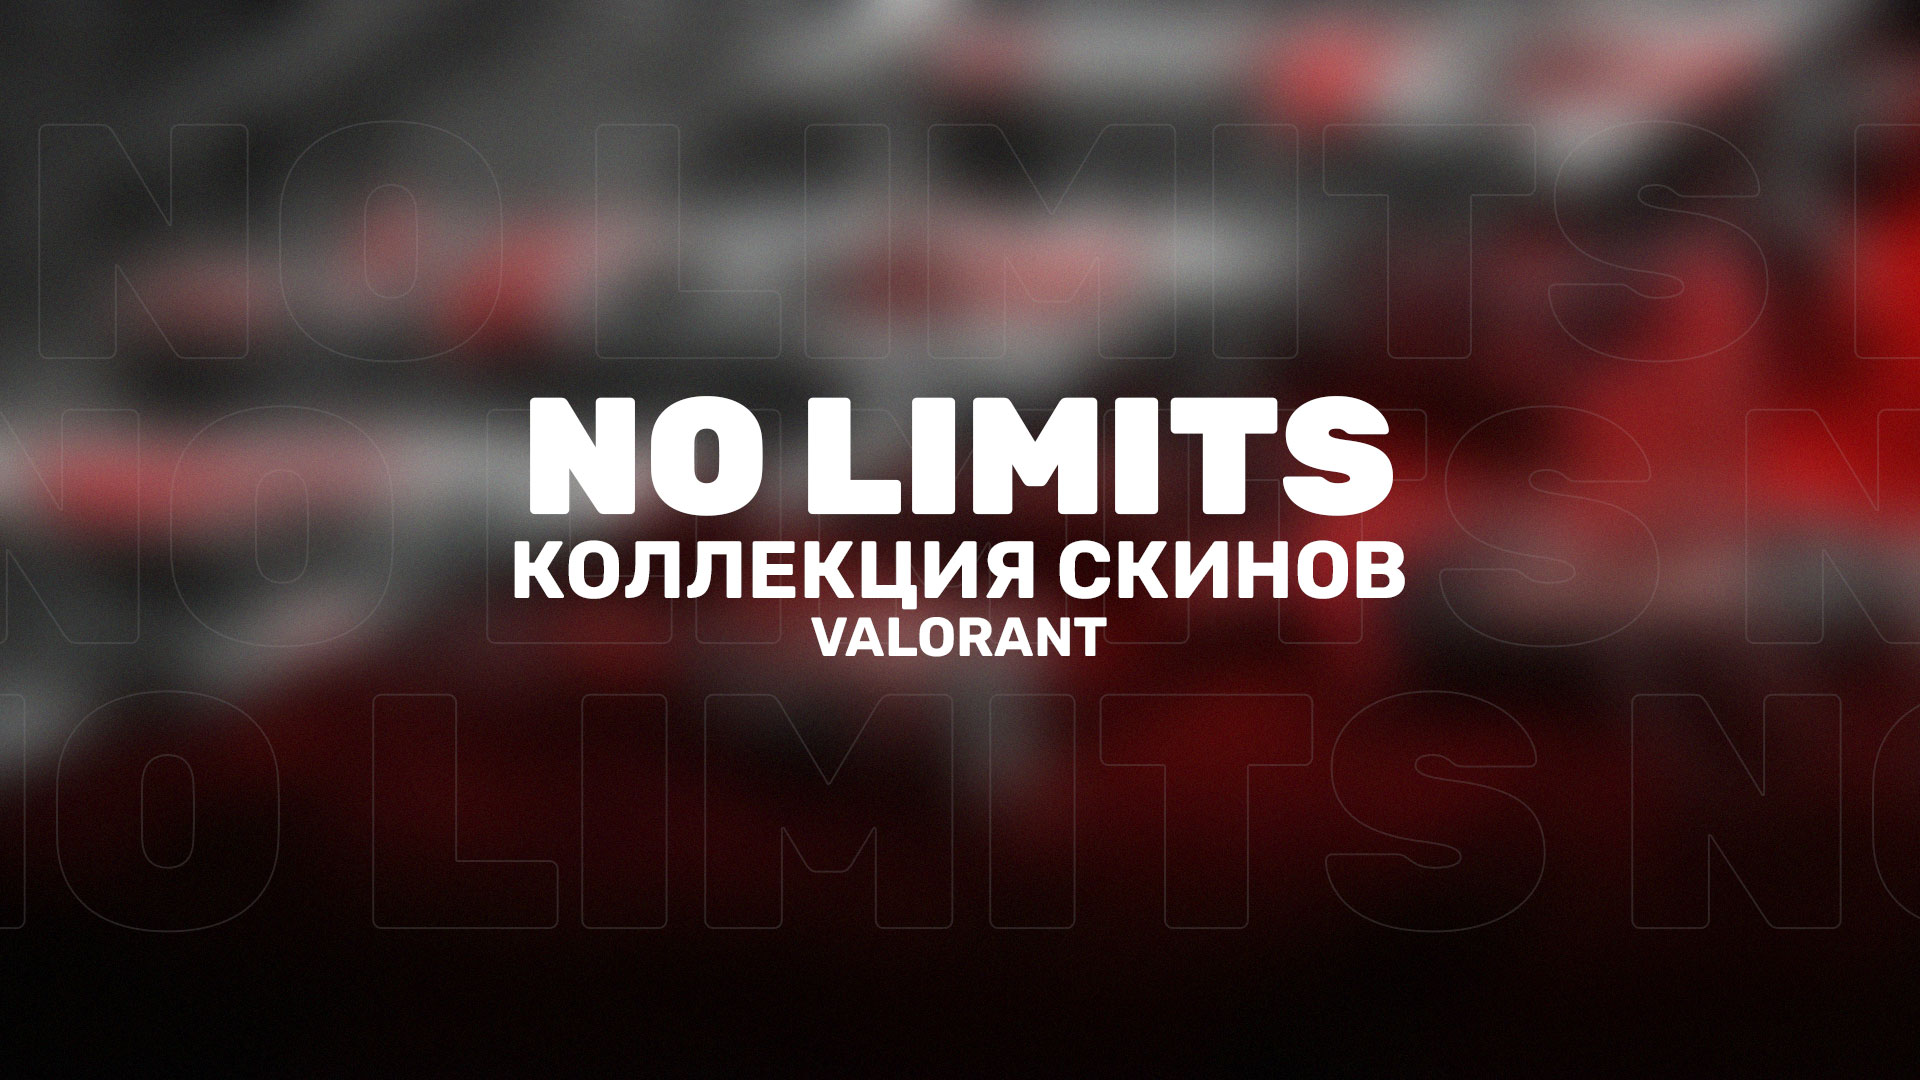 В Valorant, вместе с патчем 6.11, появилась новая простая коллекция скинов «Без тормозов» (NO LIMITS).